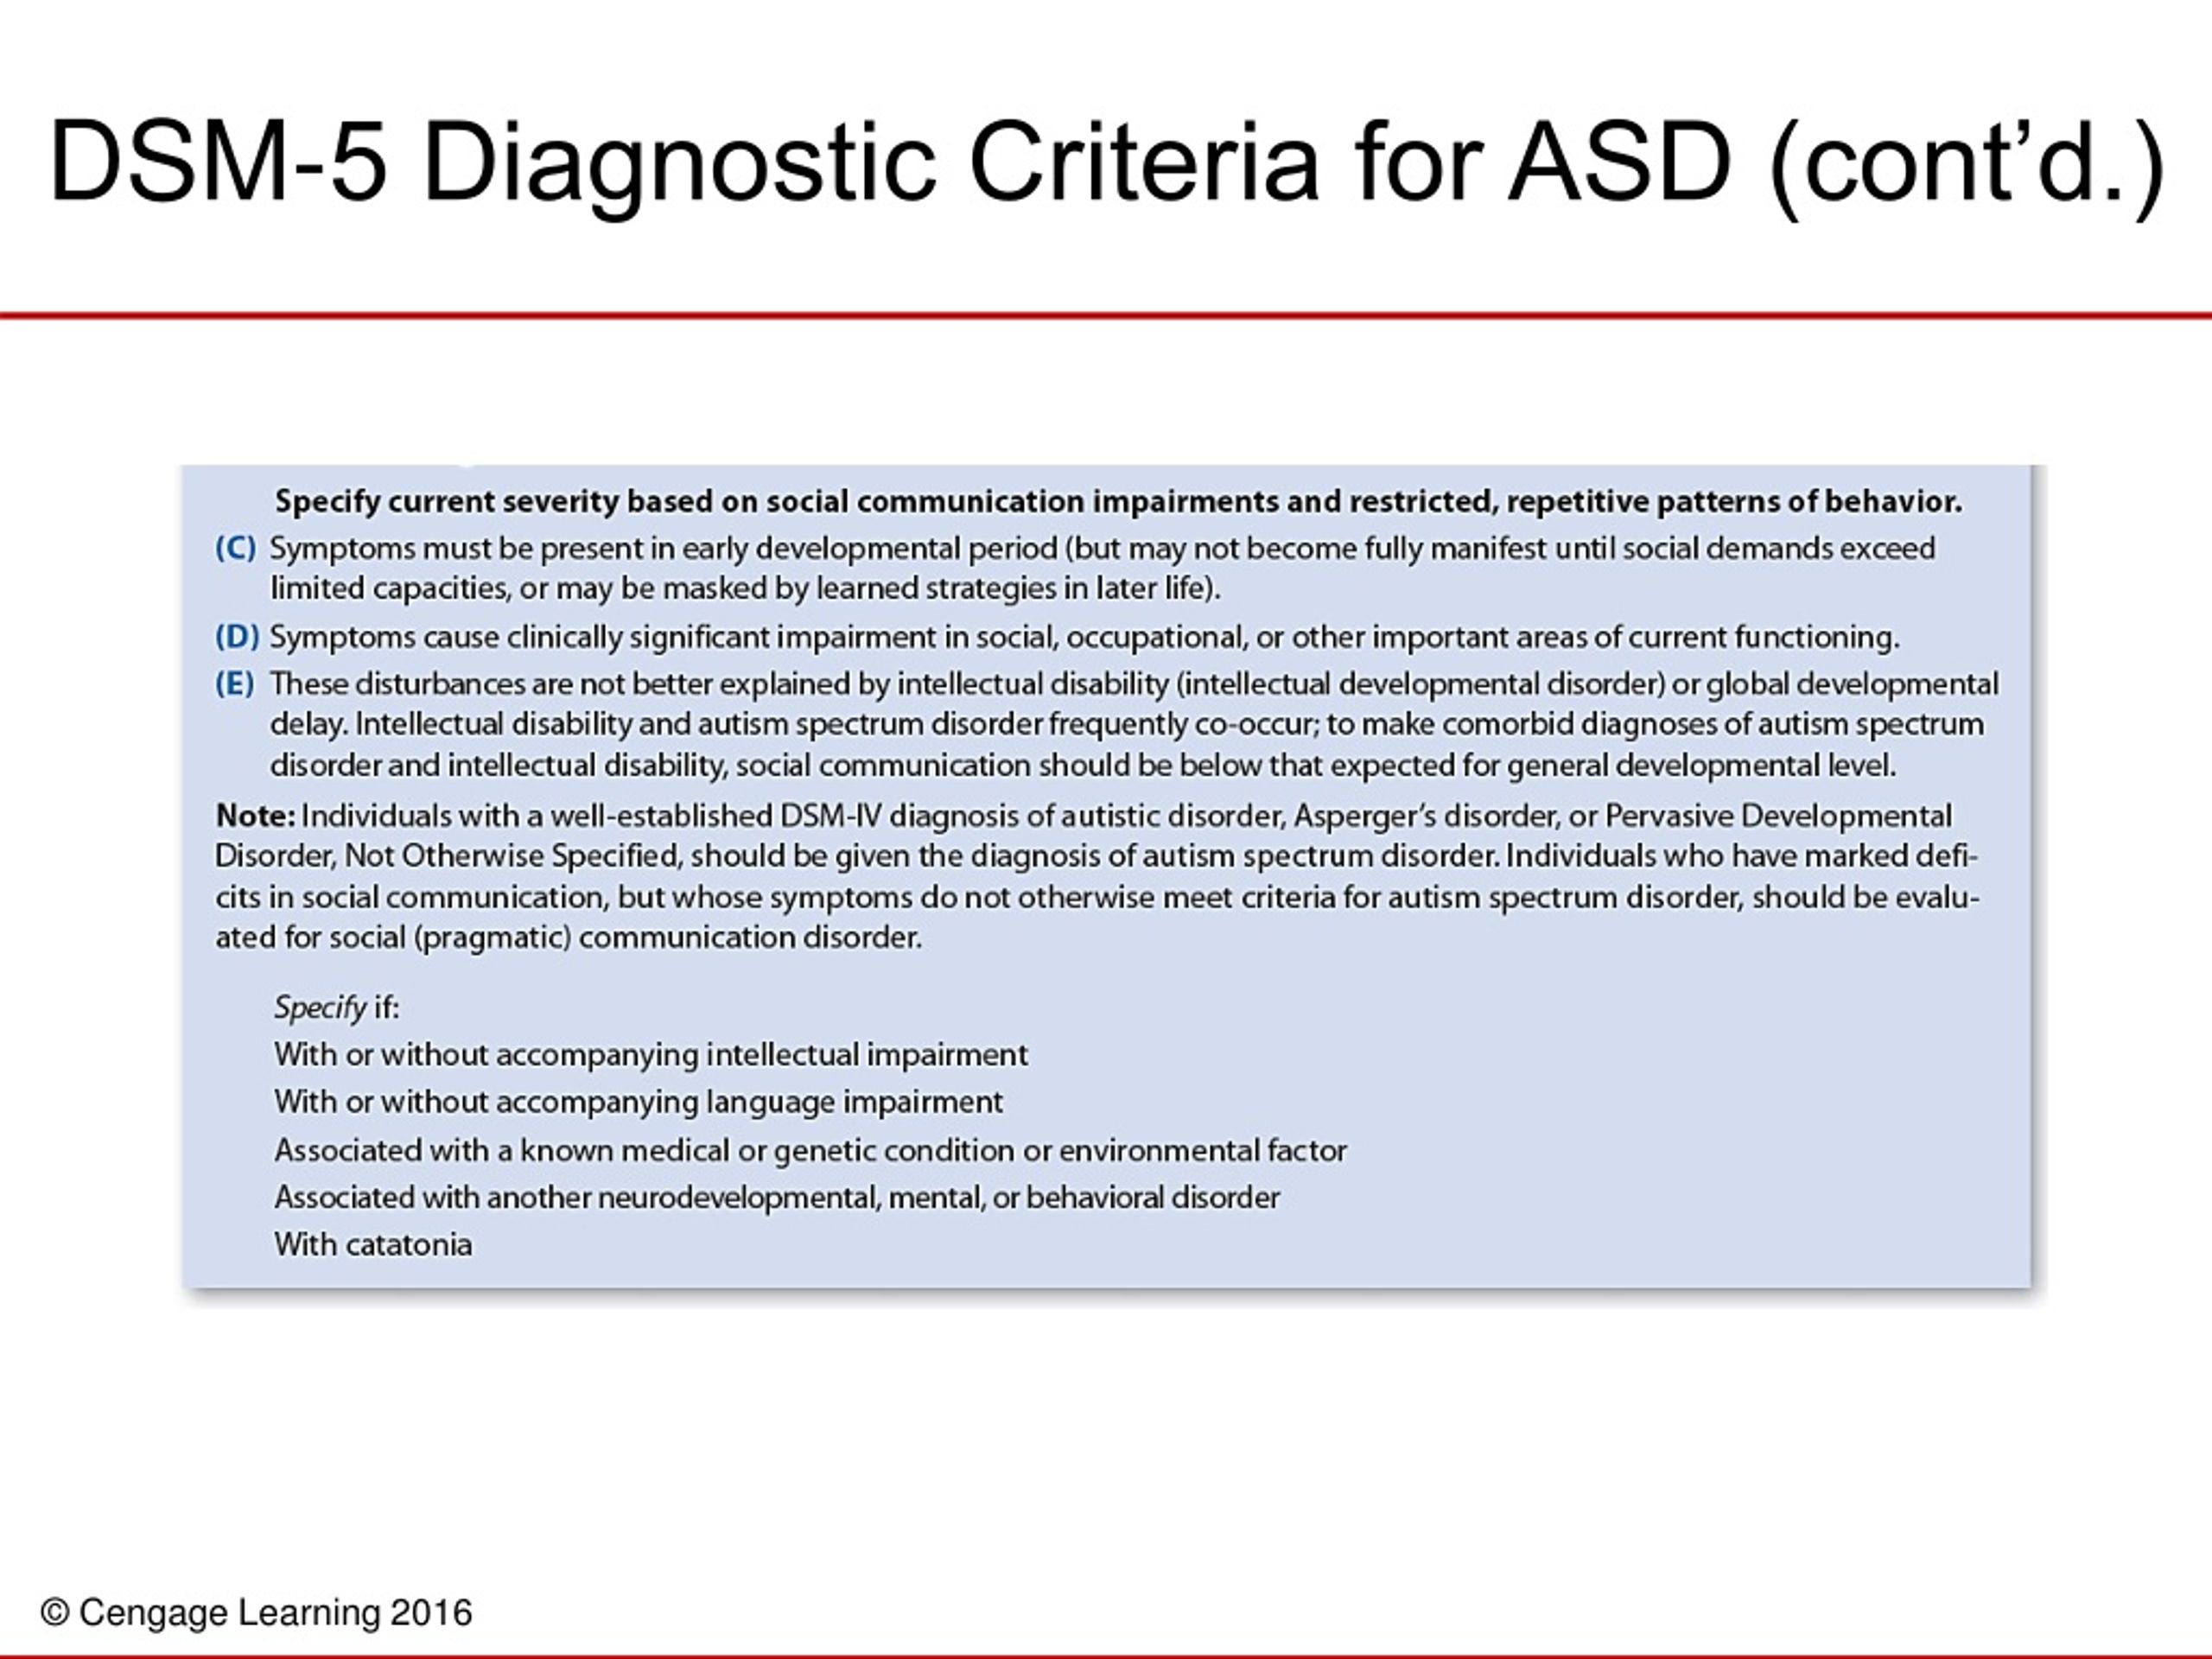 dsm 5 asd diagnosis